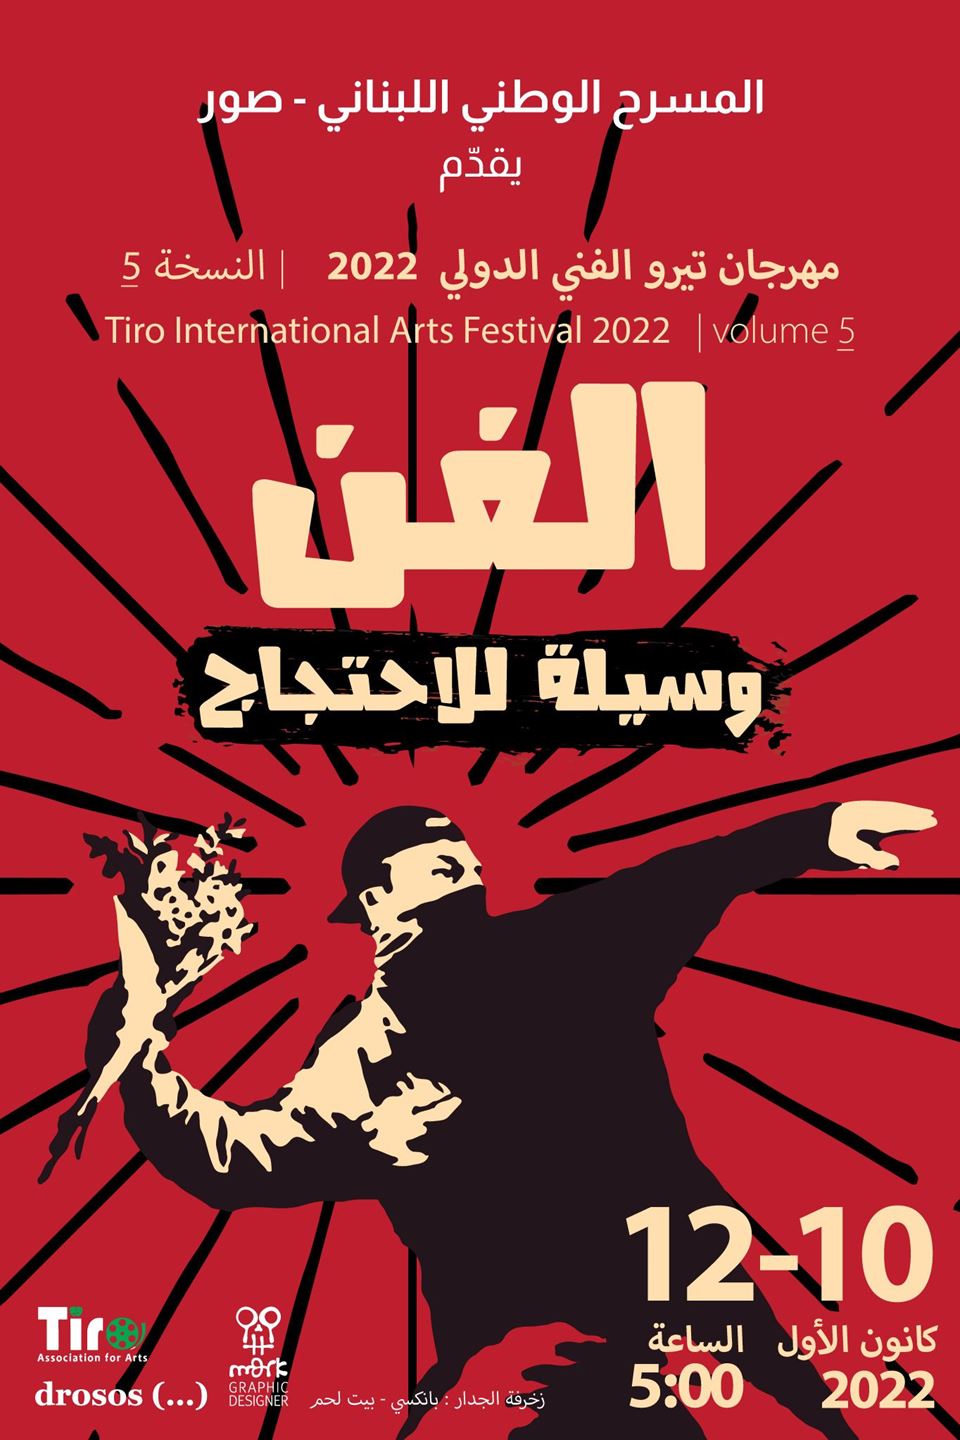 إطلاق مهرجان تيرو الفنّي الدّولي في المسرح الوطني اللبناني بدورته الخامسة